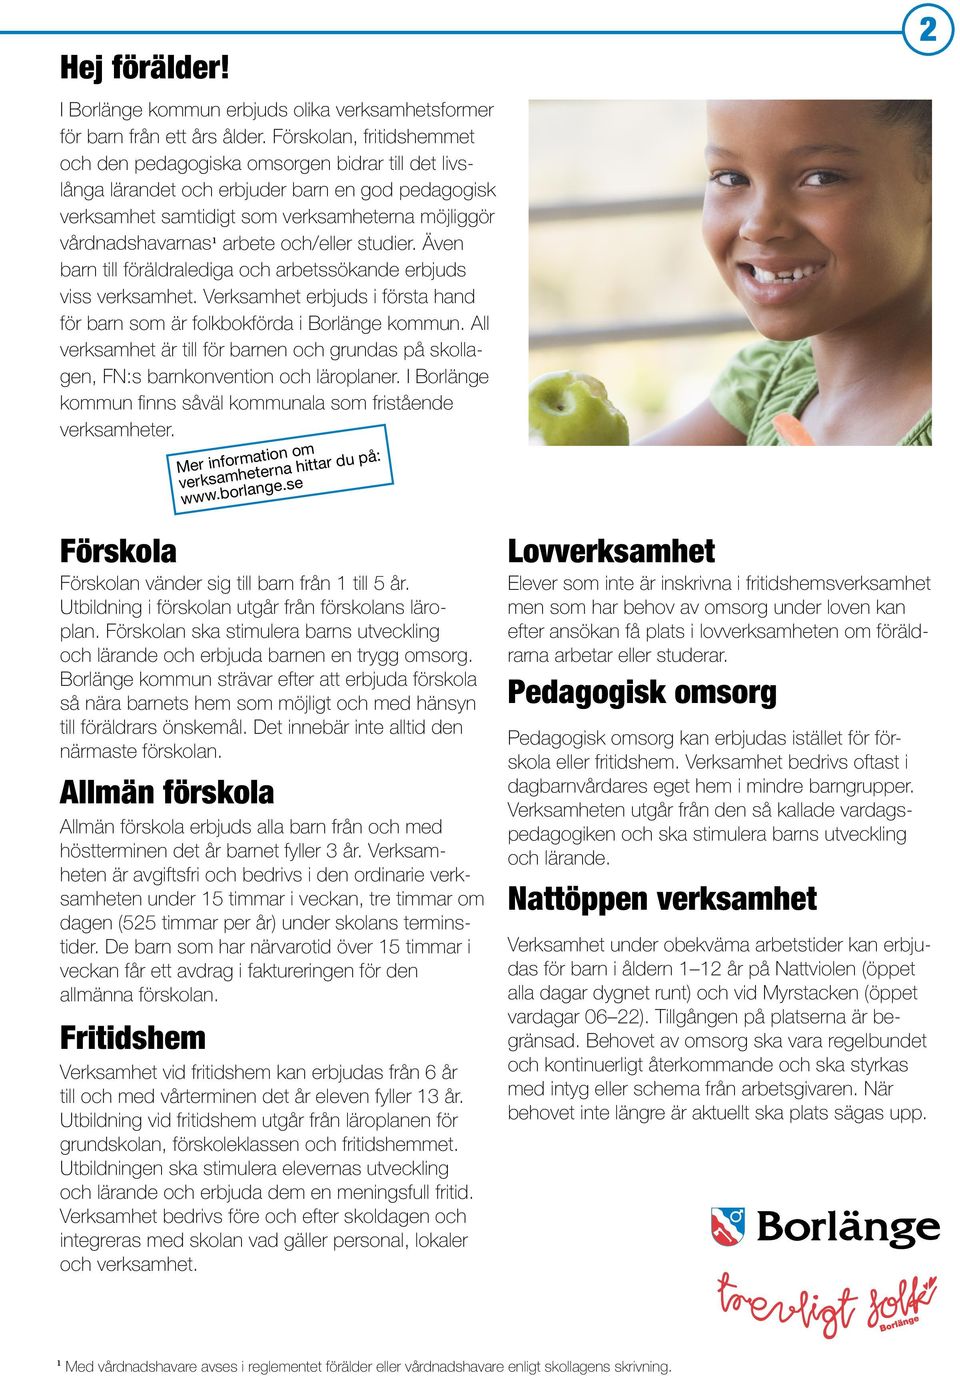 och/eller studier. Även barn till föräldralediga och arbetssökande erbjuds viss verksamhet. Verksamhet erbjuds i första hand för barn som är folkbokförda i Borlänge kommun.